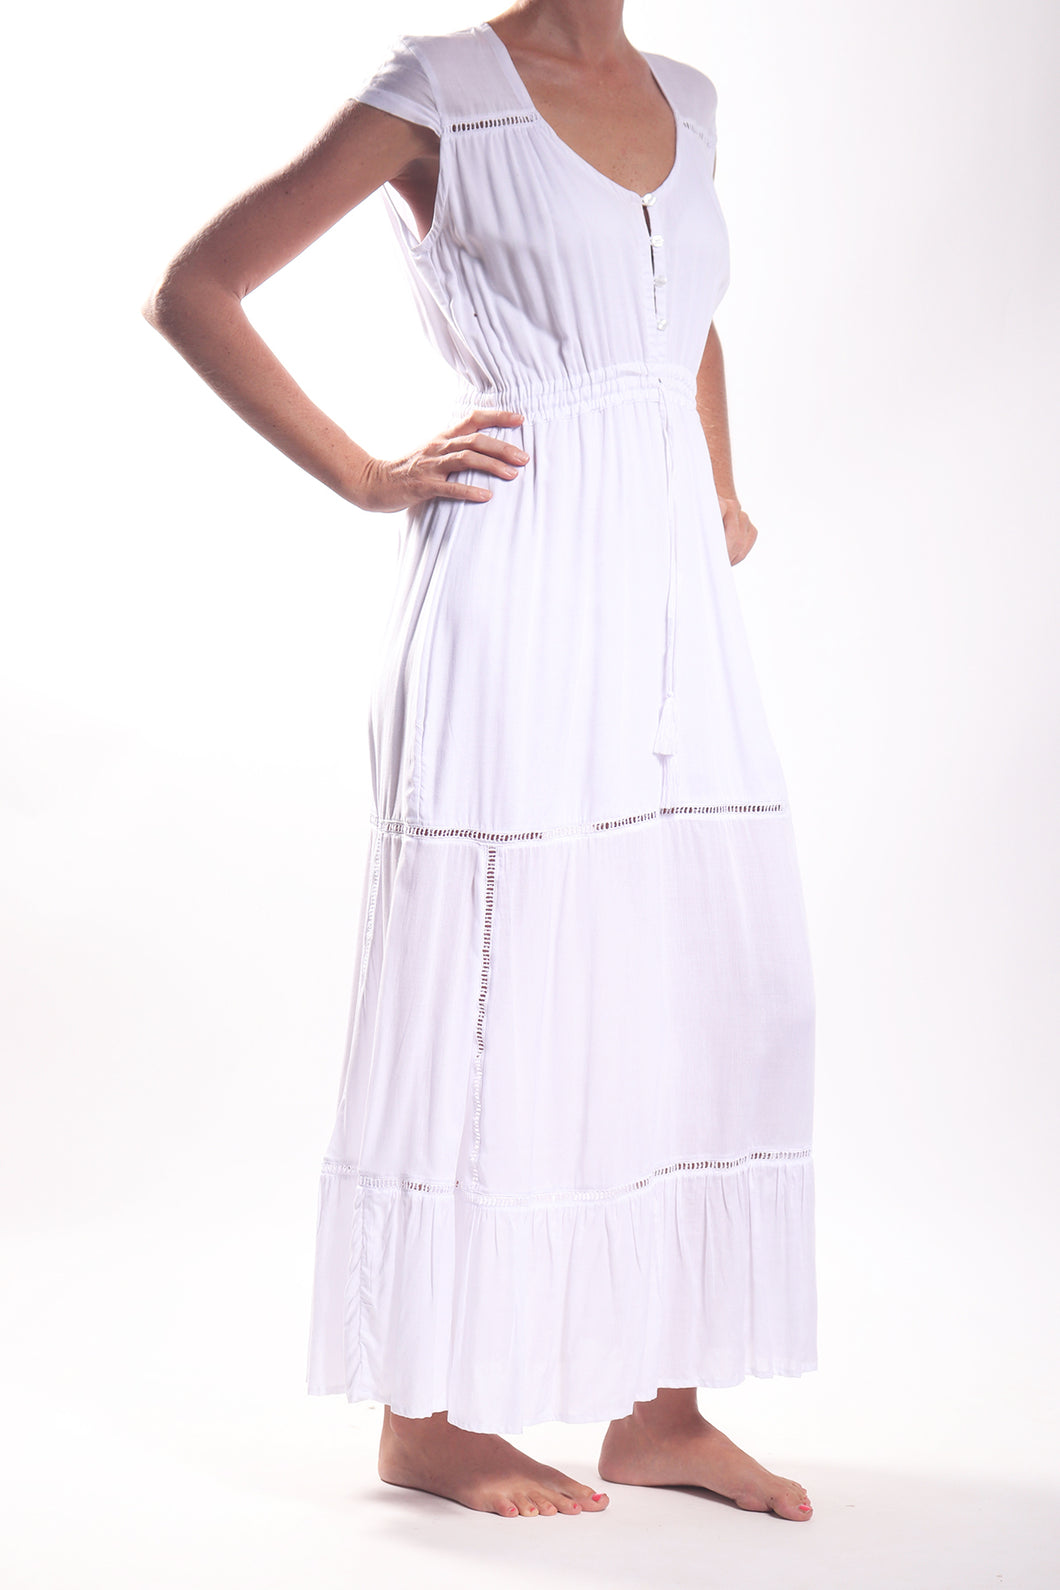 Prairie Dress/Rayon Voil White